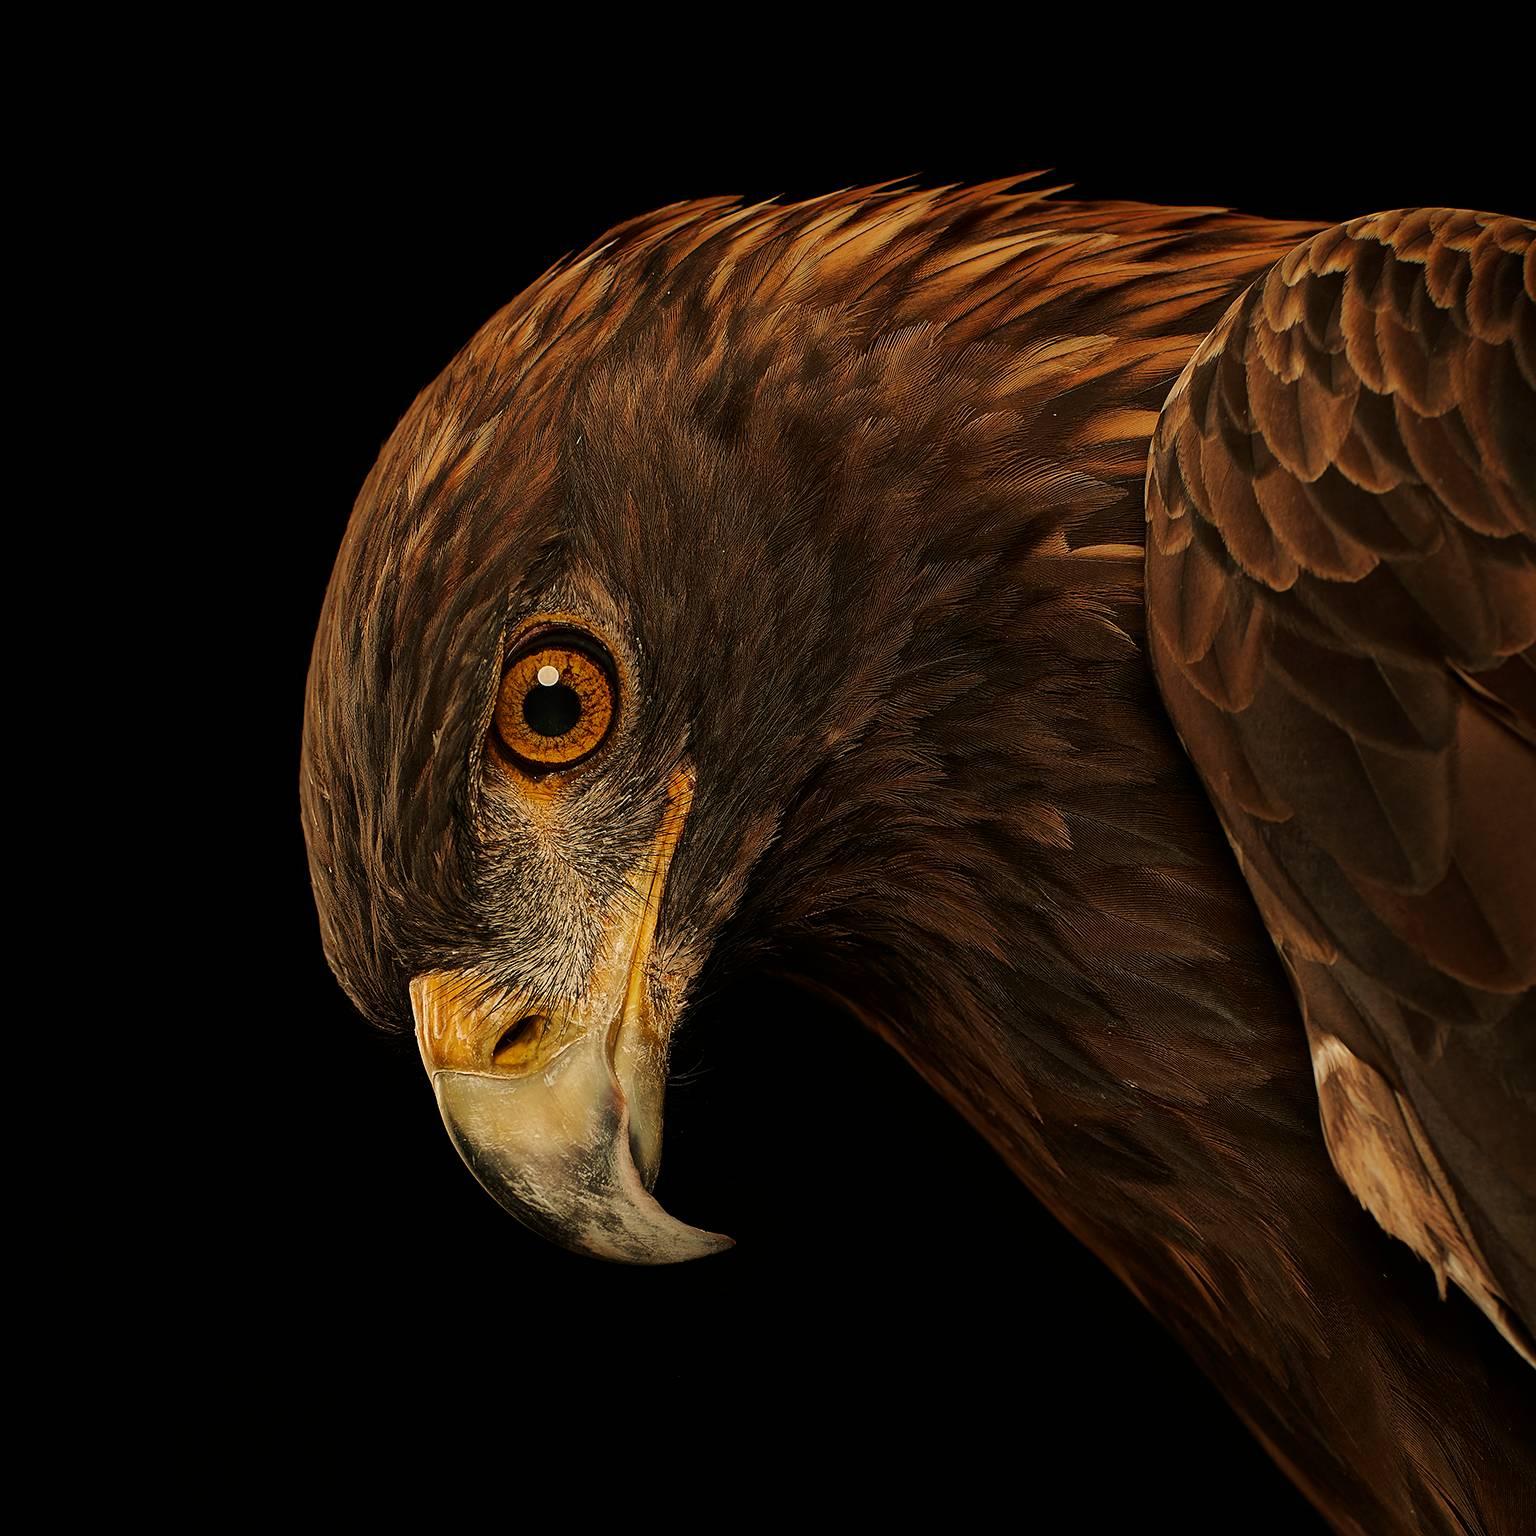 Birds of Prey Golden Eagle No.5 - Photograph by Chris Gordaneer